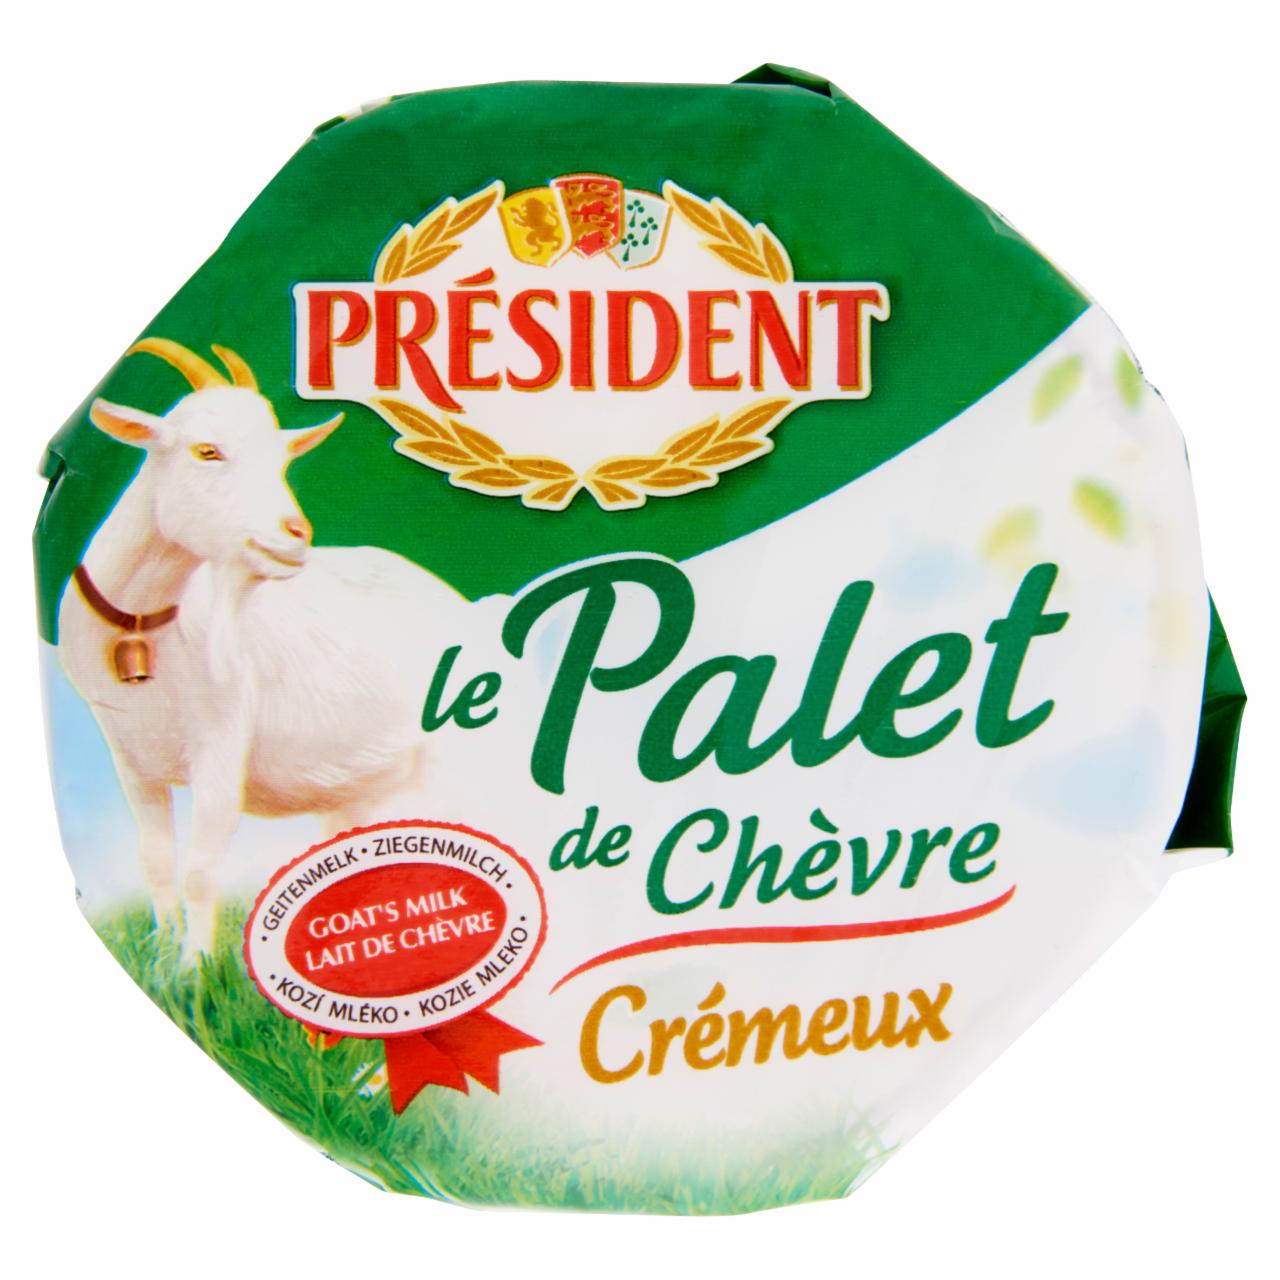 Képek - Président Palet de Chèvre zsíros, lágy kecskesajt 120 g